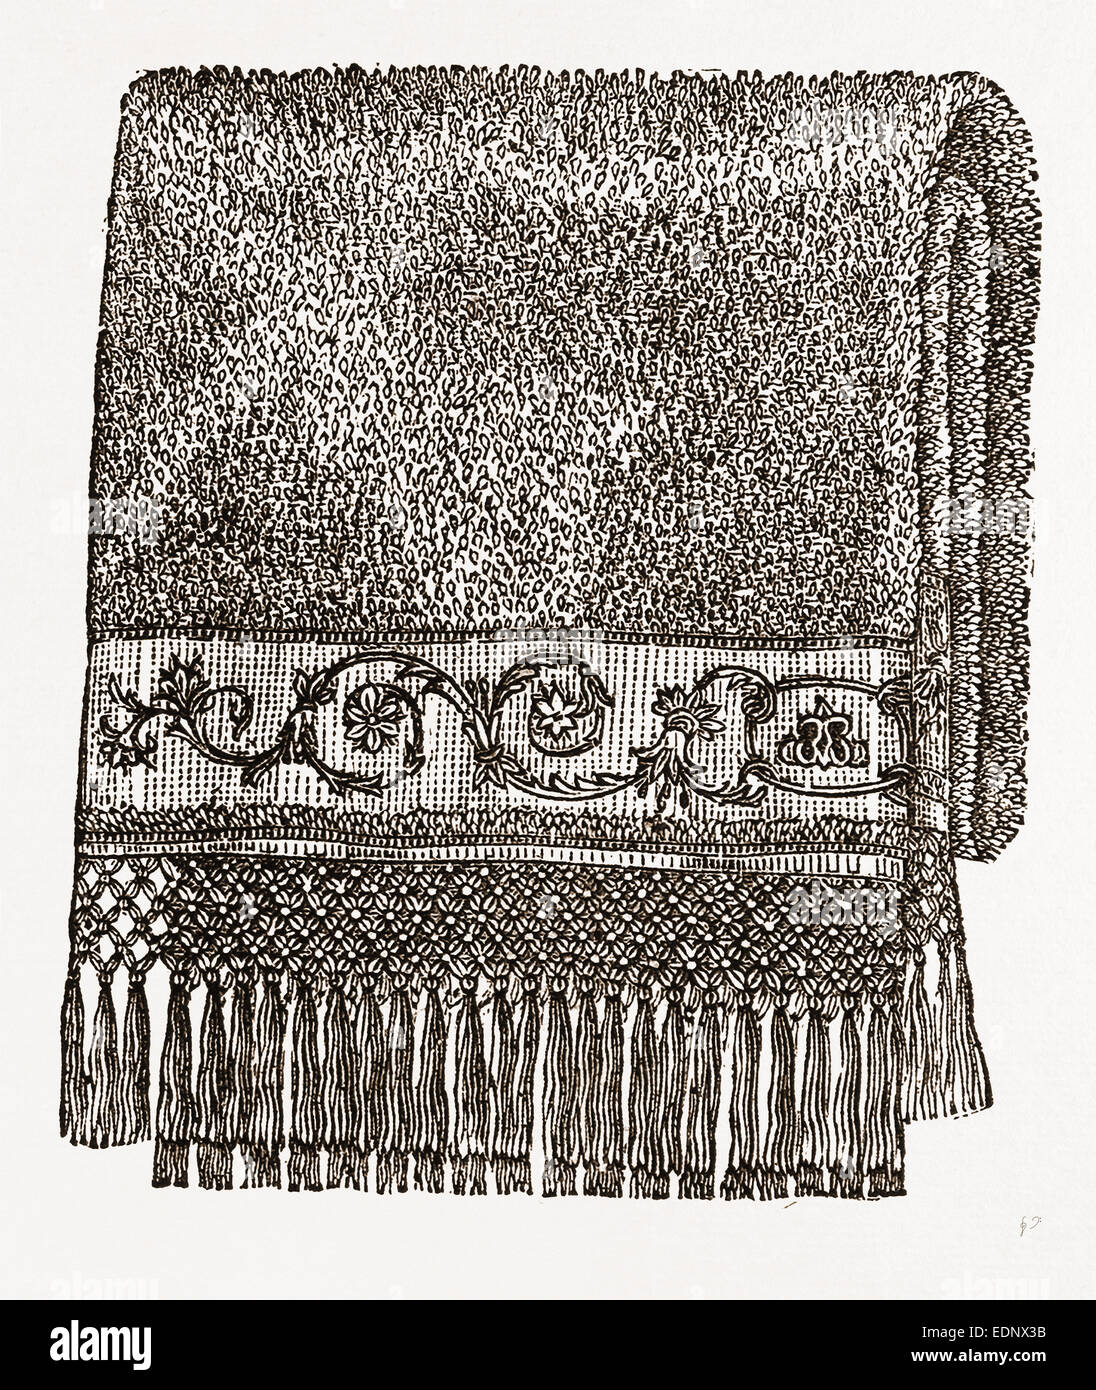 Toalla en cordón cosido bordado, costura, bordado del siglo XIX. Foto de stock